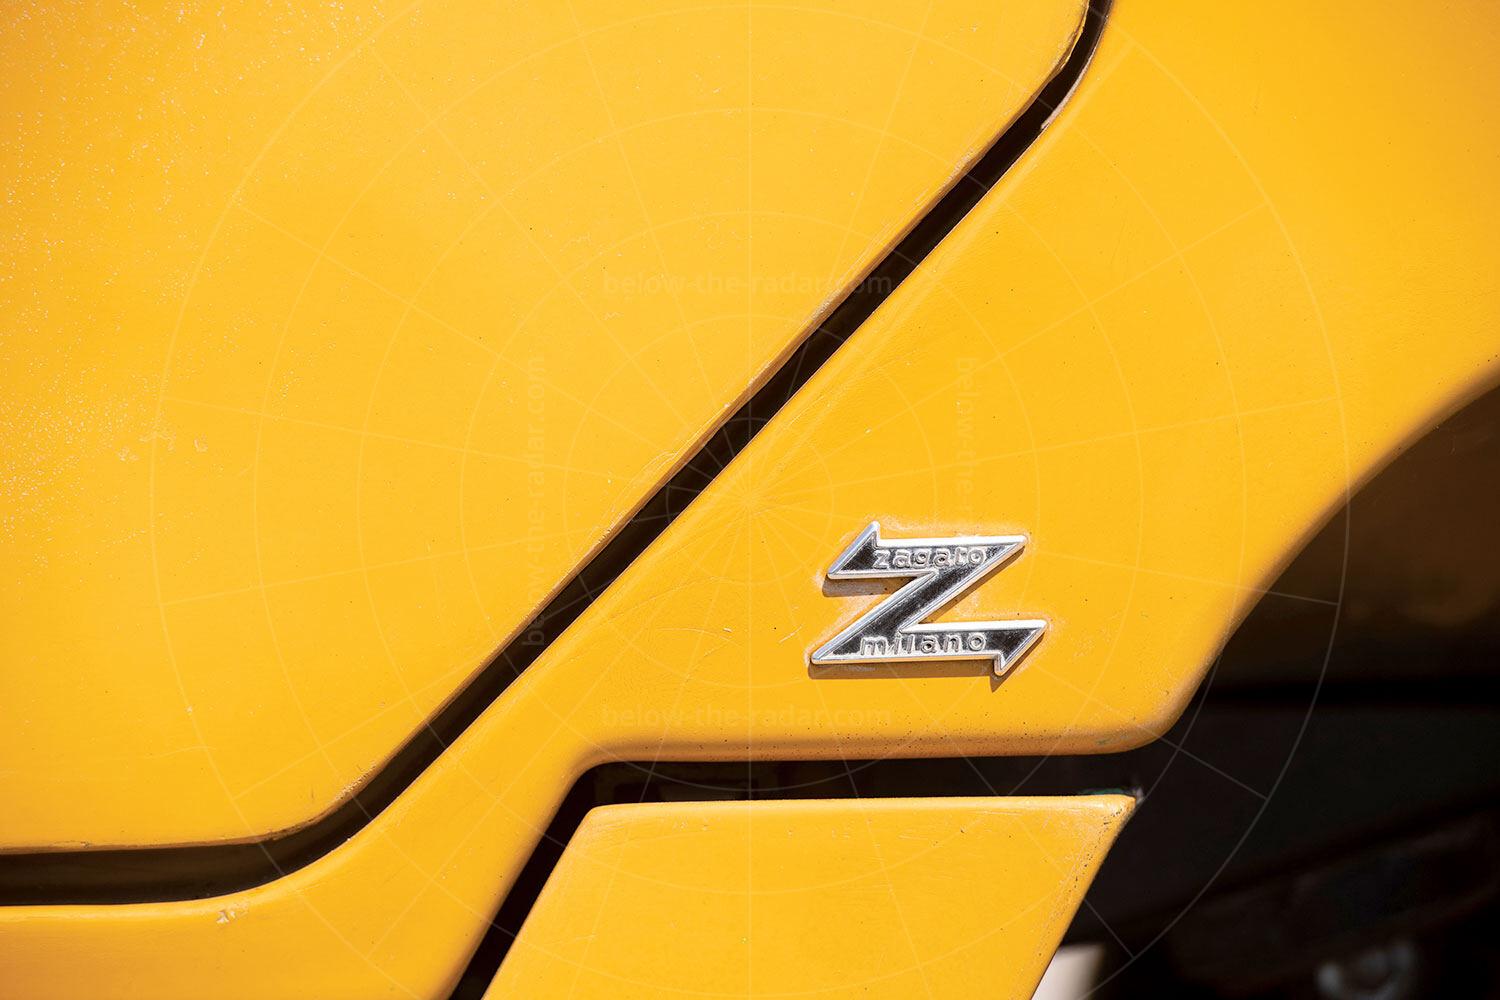 Zagato Zele badging Pic: RM Sotheby's | Zagato Zele badging